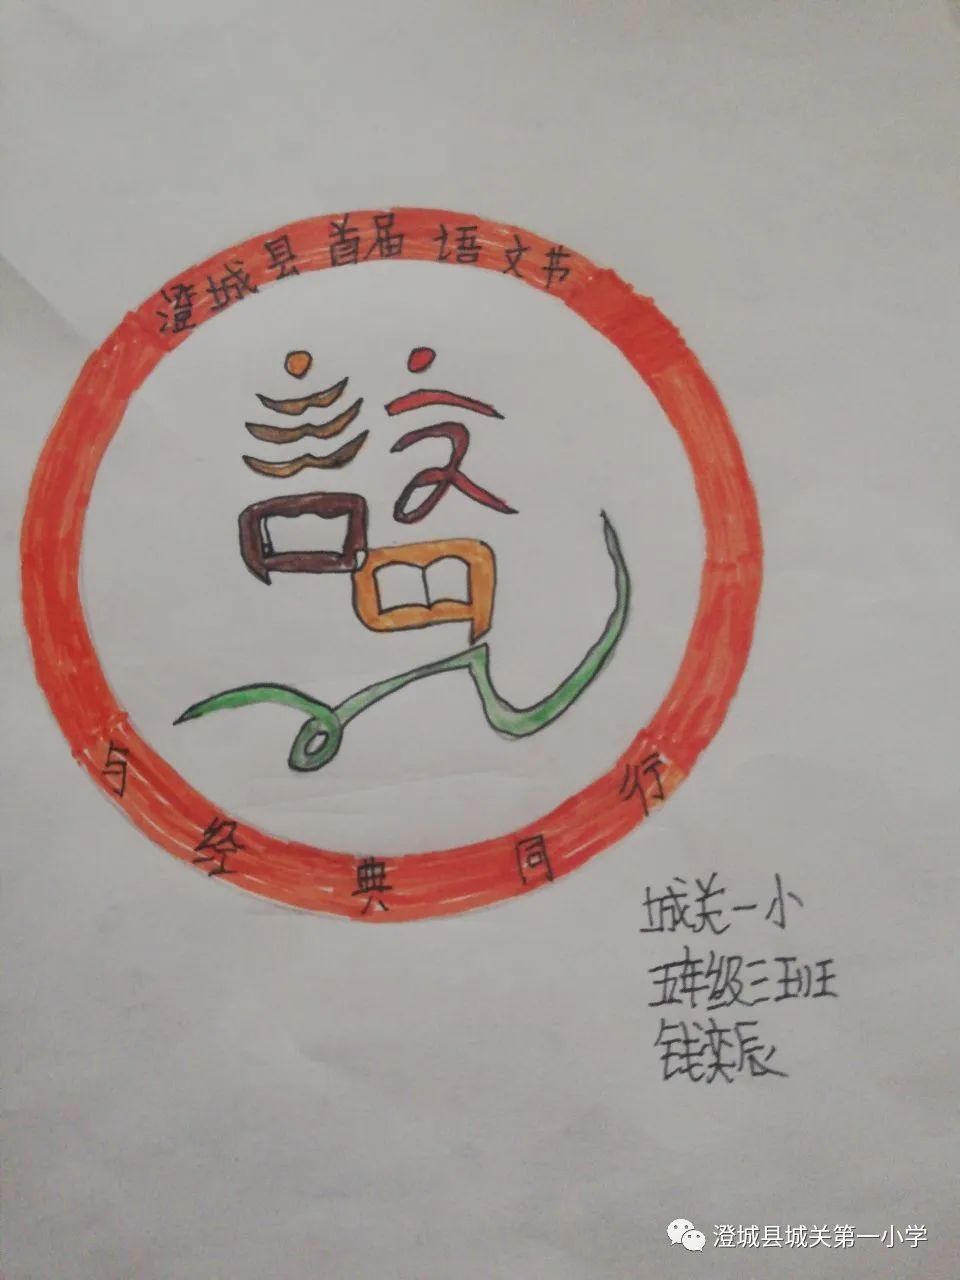 语文文化节会徽设计图片